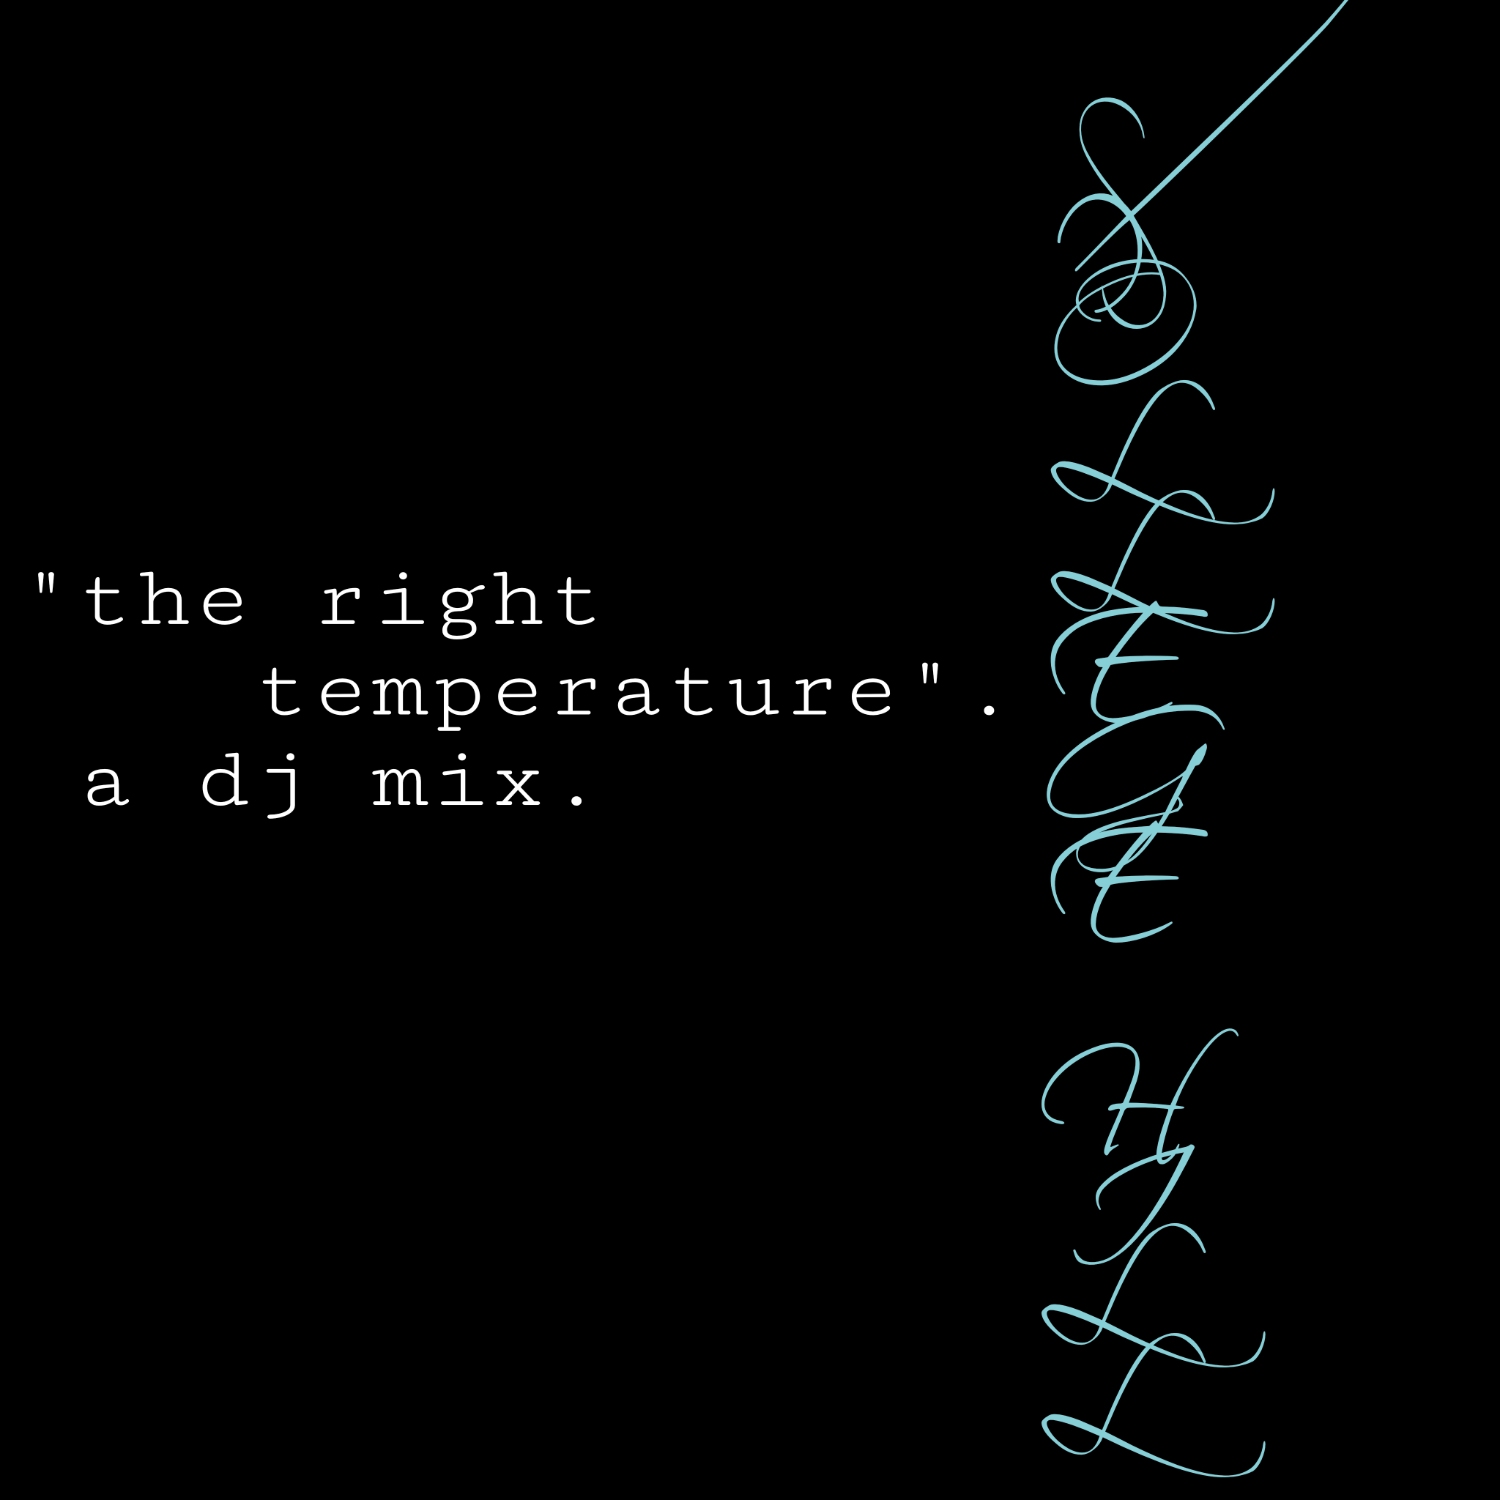 the right temperature